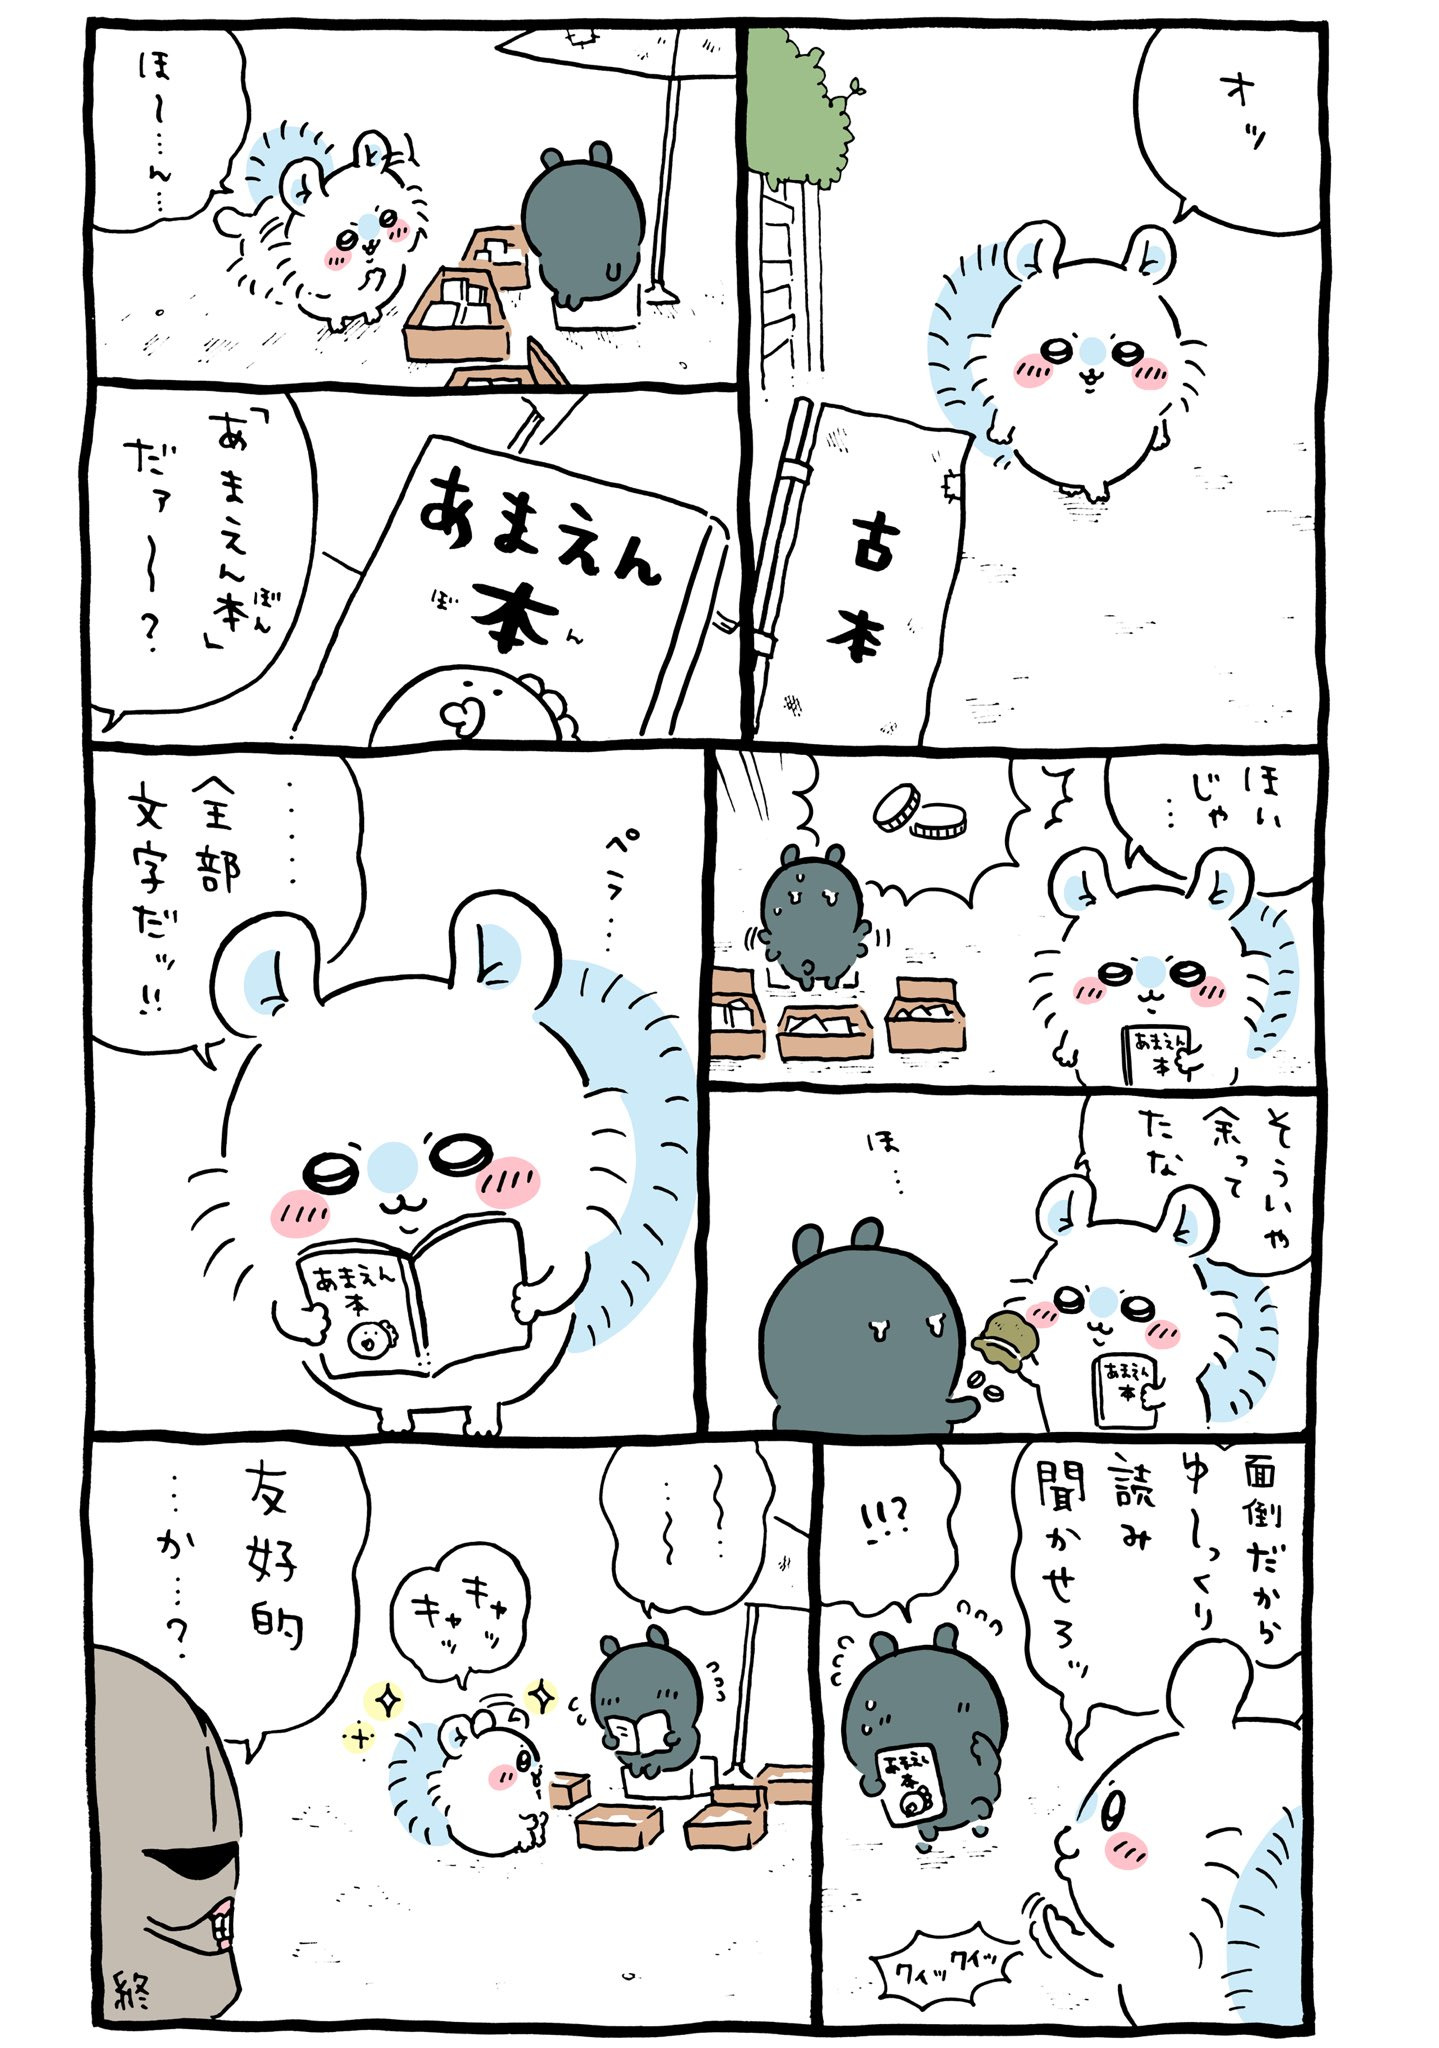 ちいかわカニちゃんモモンガ - ネイルパーツ